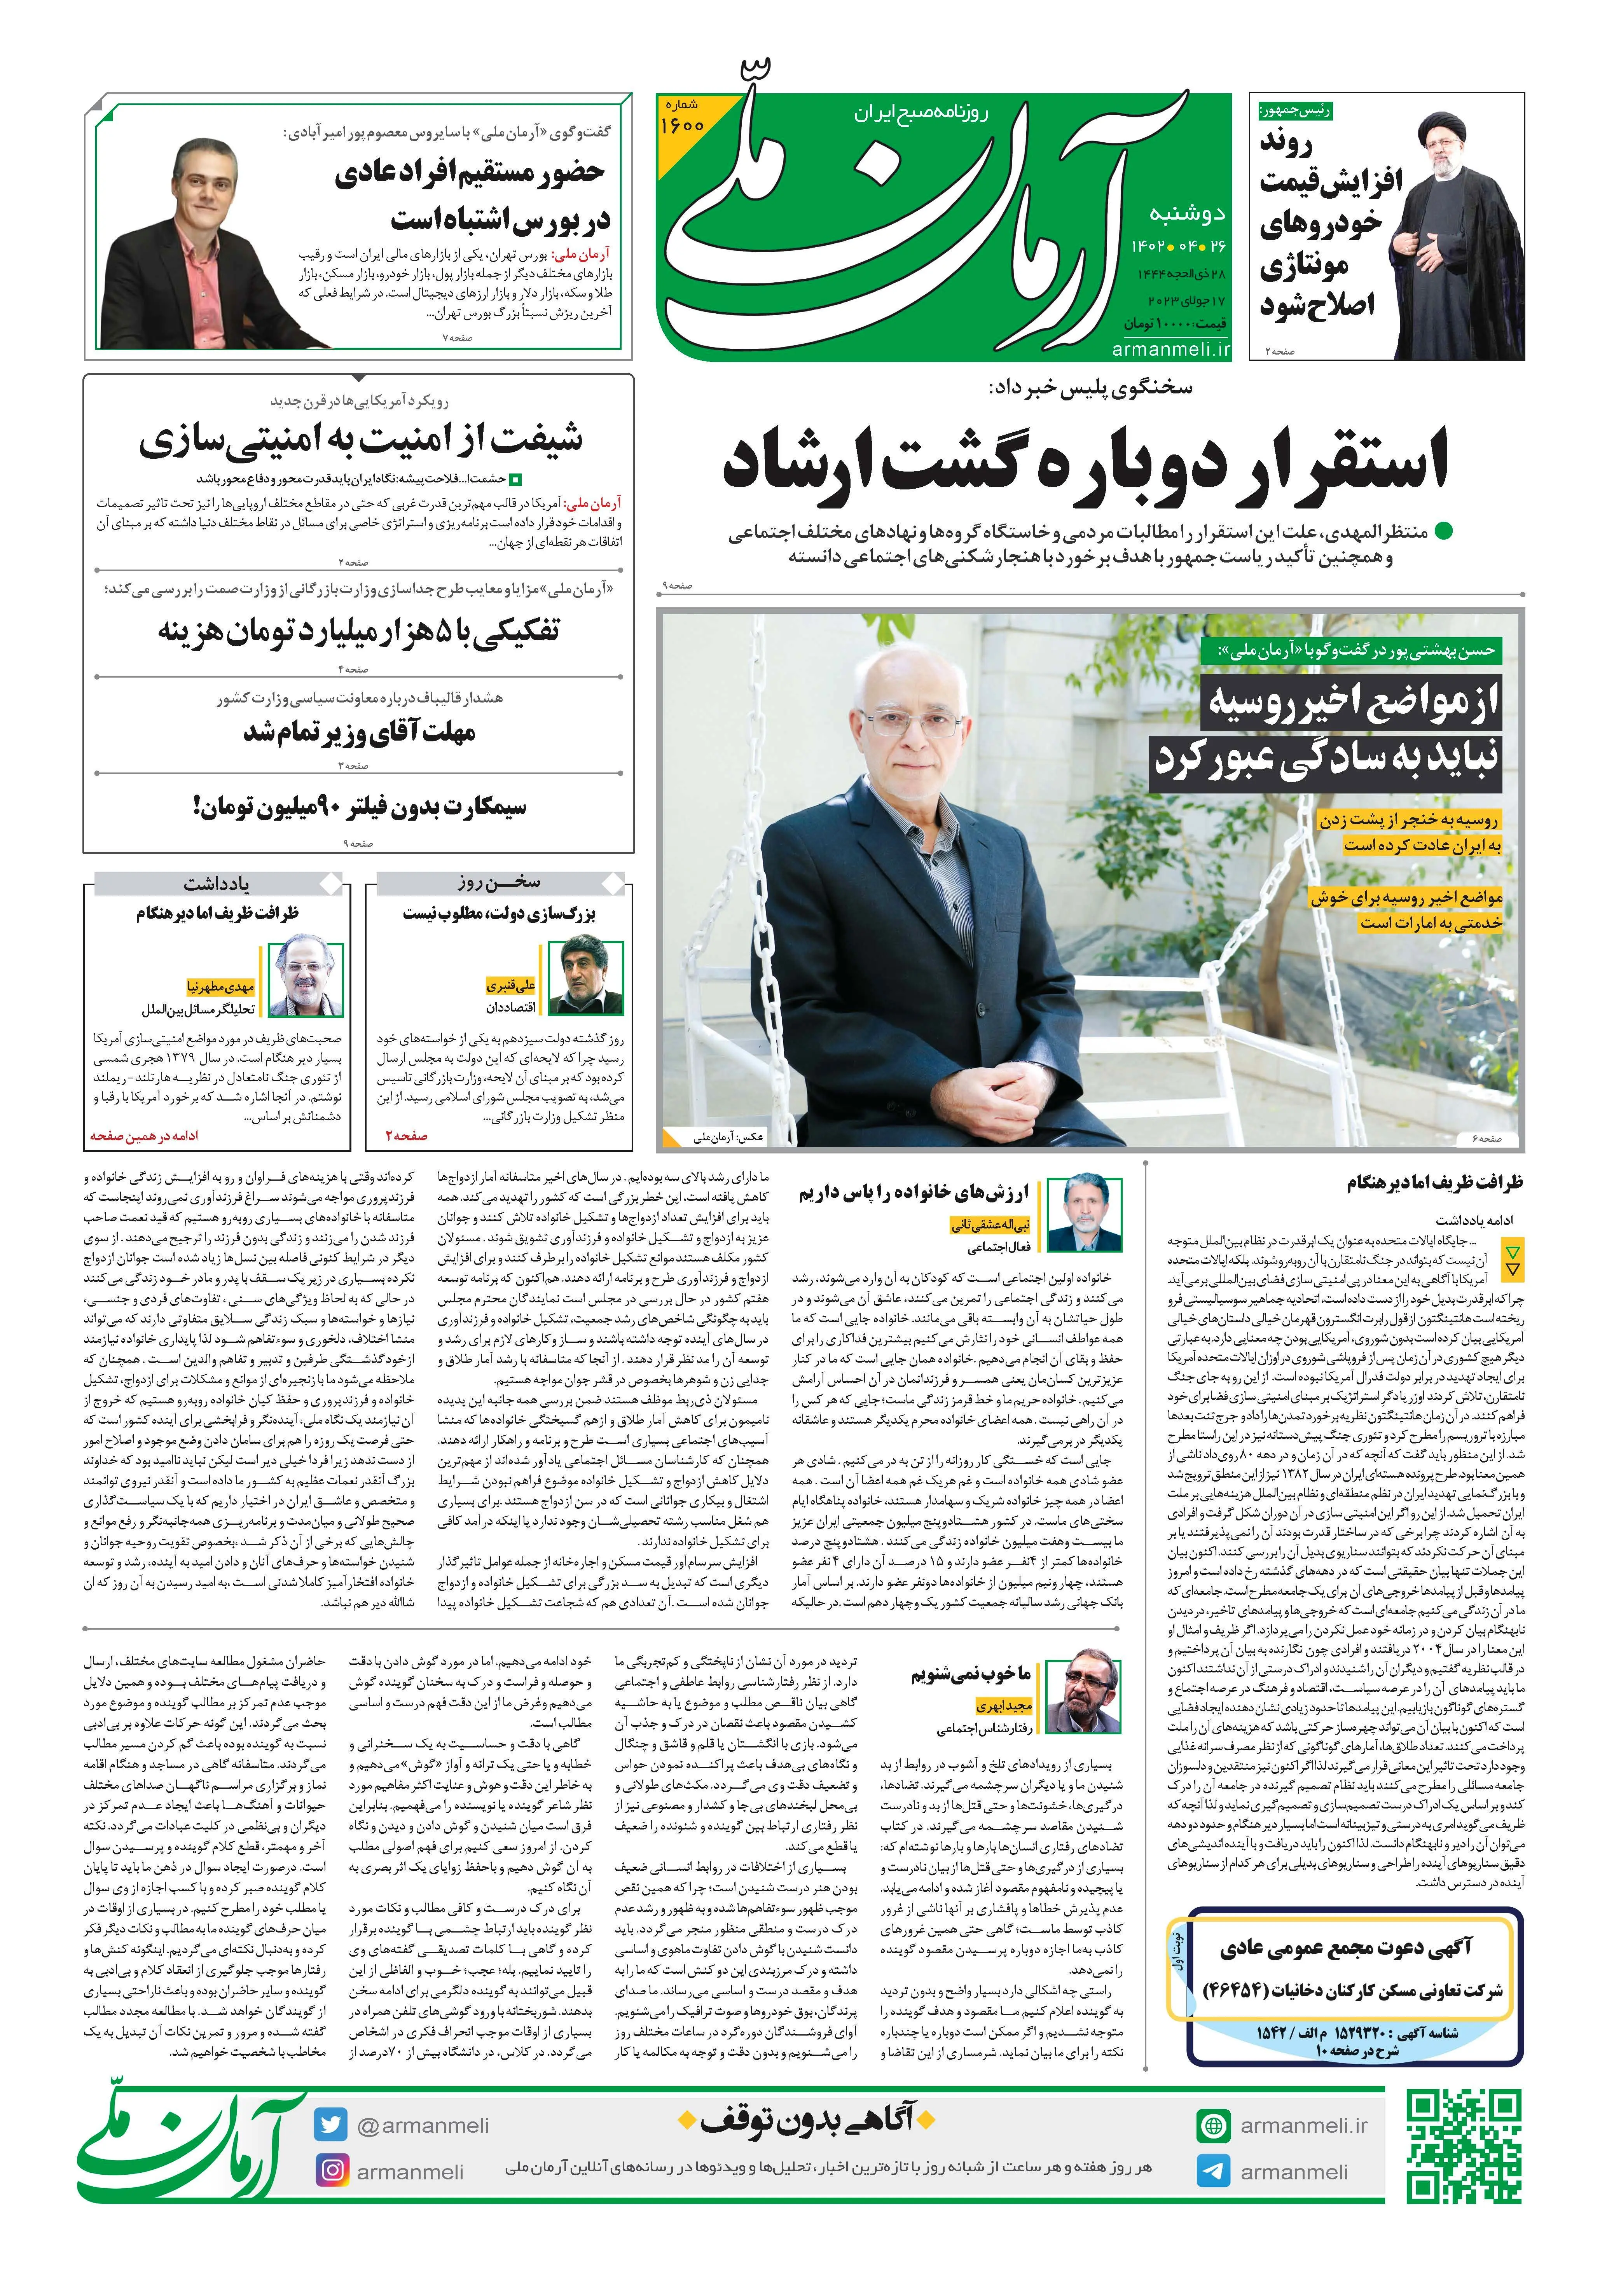 روزنامه آرمان ملی - دوشنبه 26تیر - شماره 1600